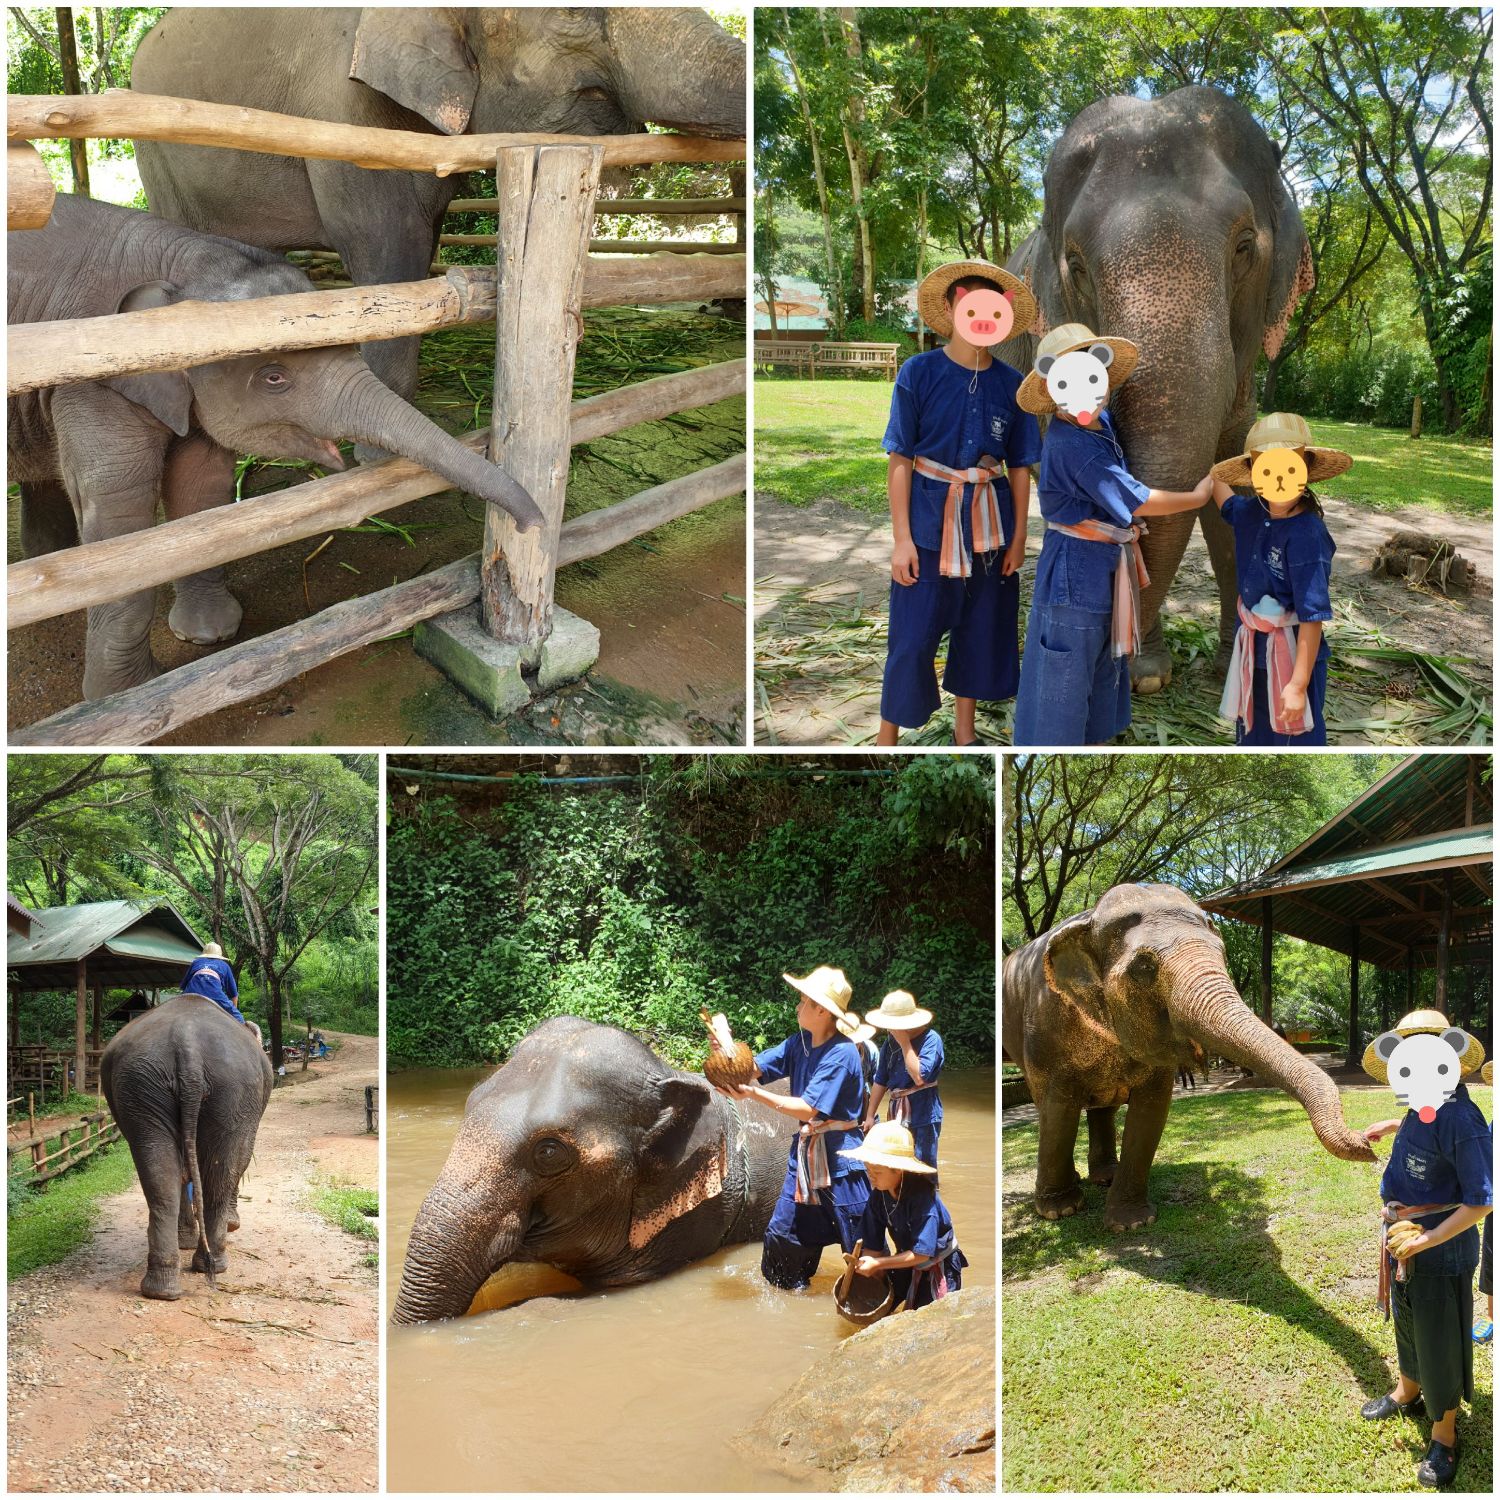 ทริปครอบครัว พาเด็กนอกขึ้นดอย ขี่ช้าง ชมวัด ขับเฟอรารี่ม้ง ที่จังหวัด เชียงใหม่ - Pantip